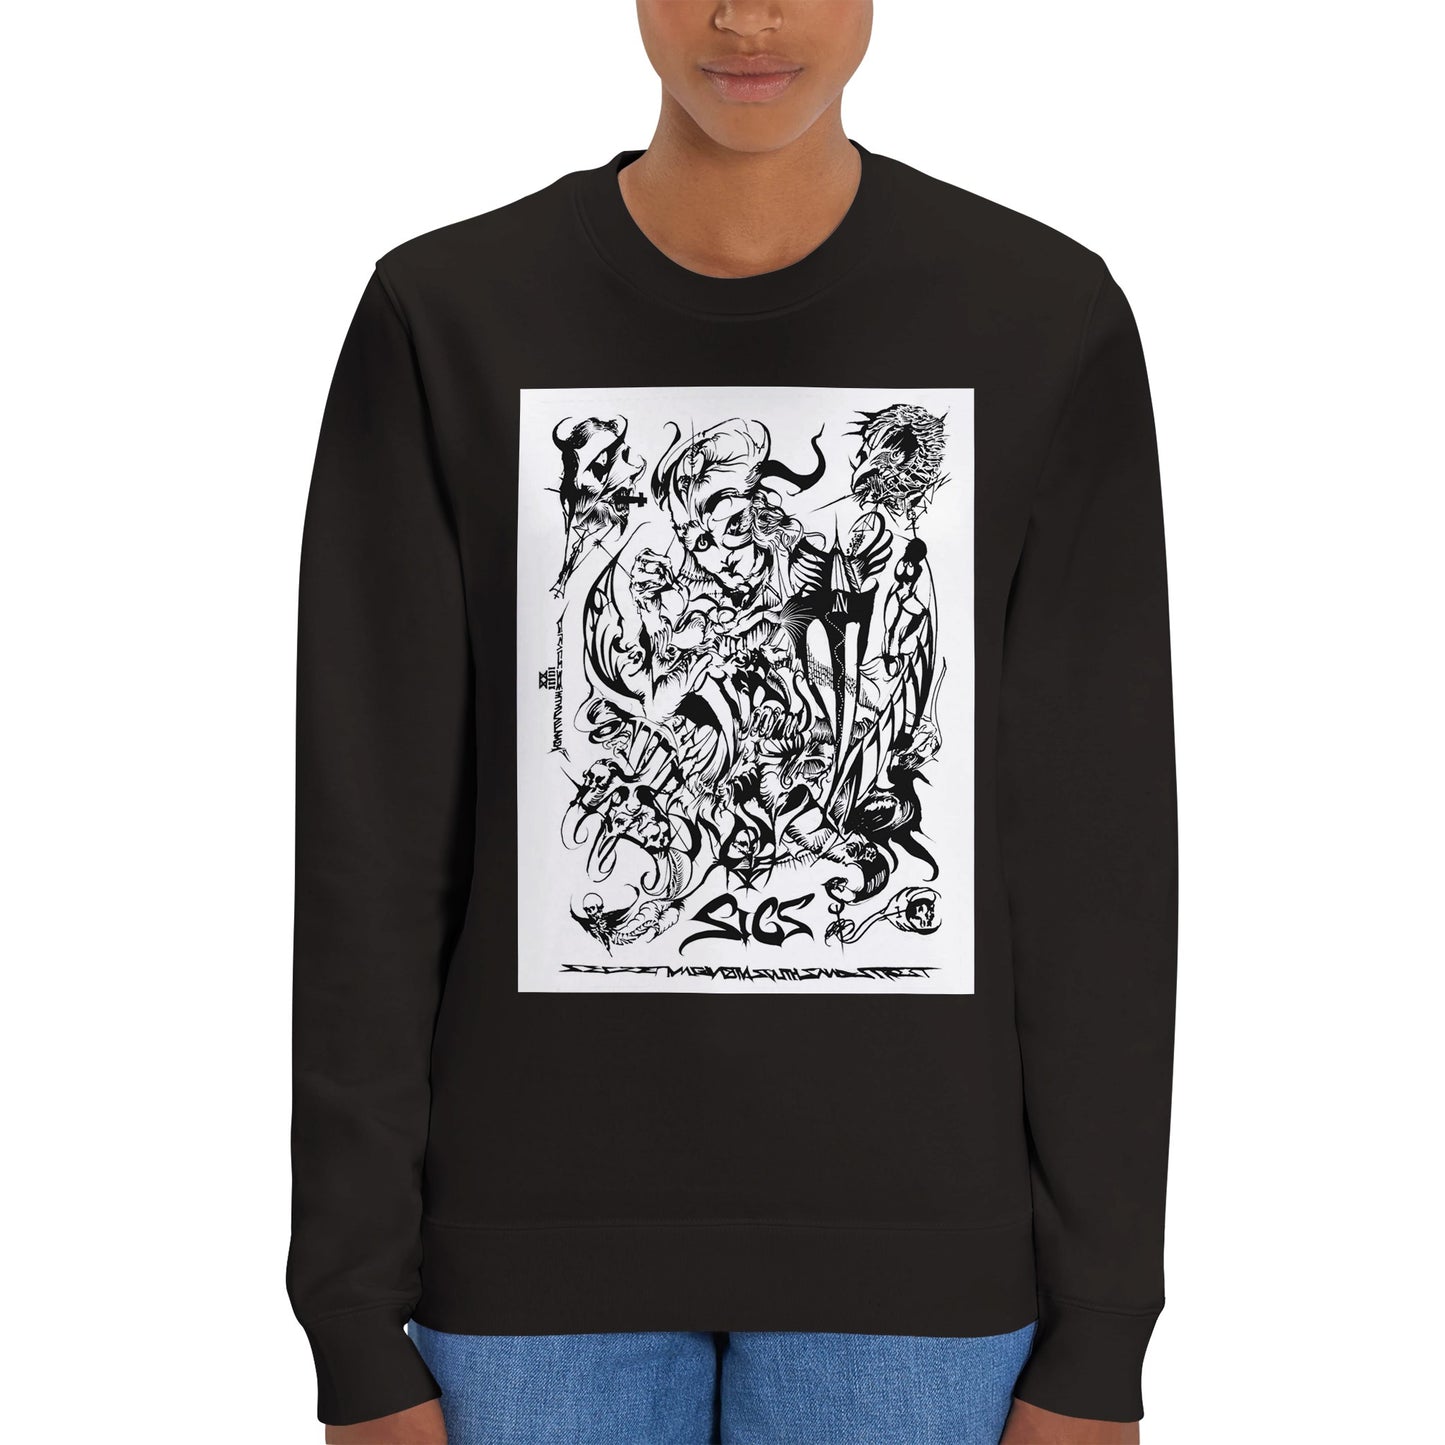 SICS - Truth Work - baobabwod artwear - Limited Edition - Premium Heavyweight Organic Unisex Sweatshirt